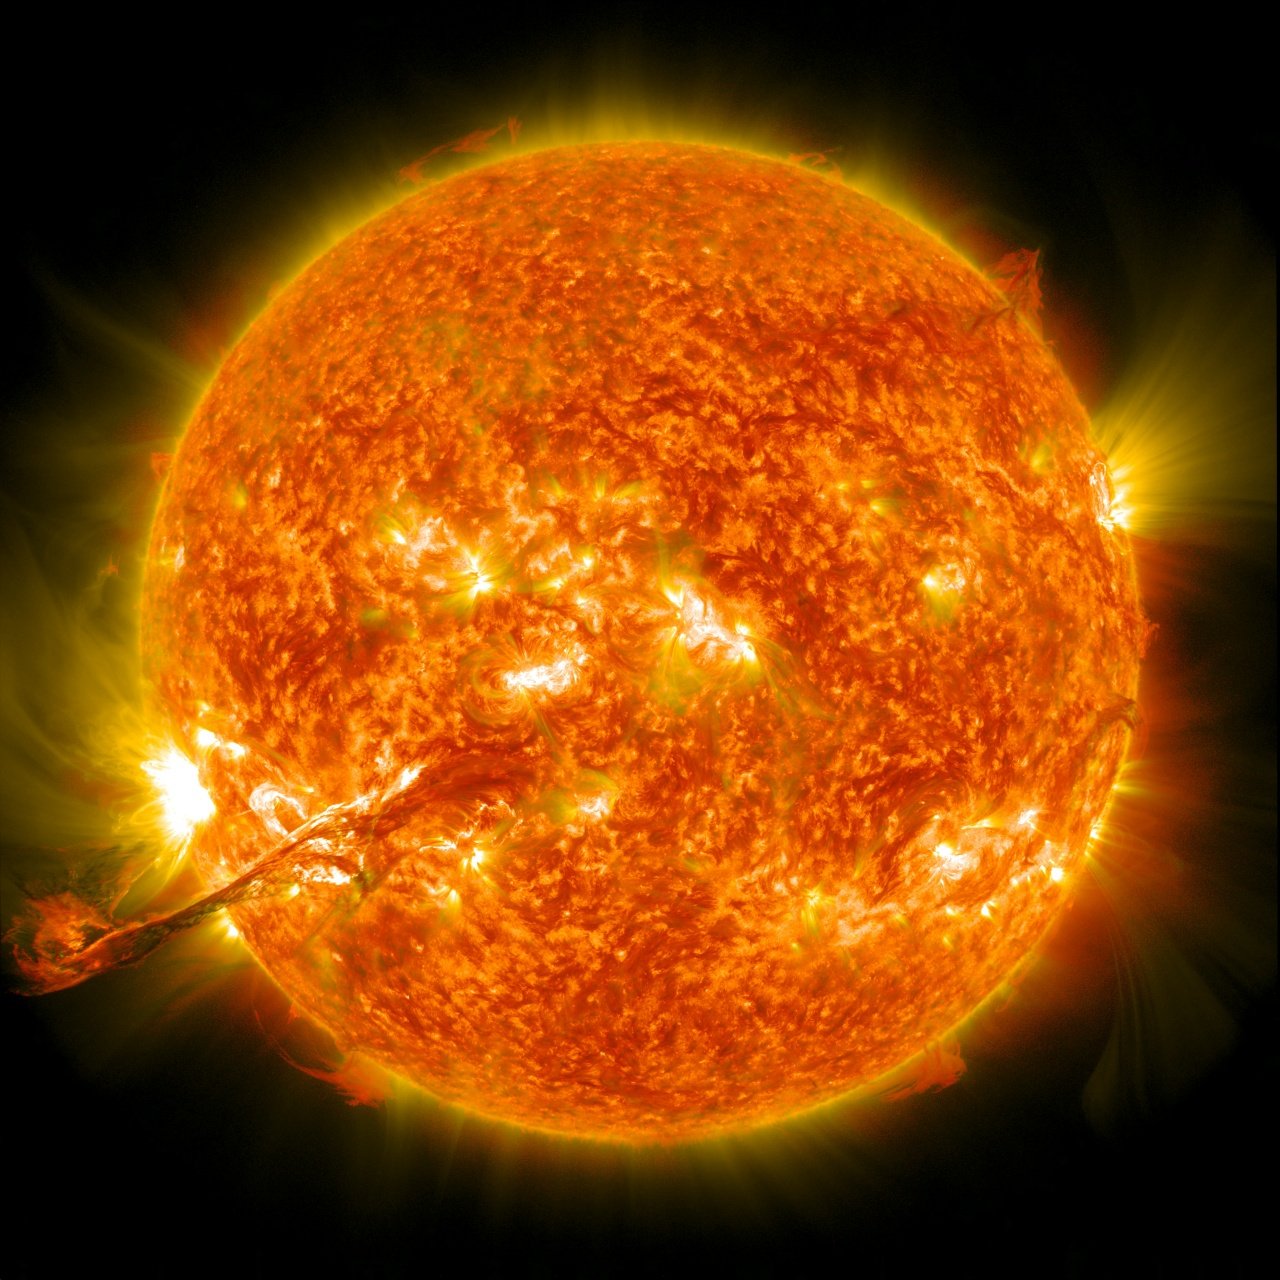 Sol corona solar altas temperaturas